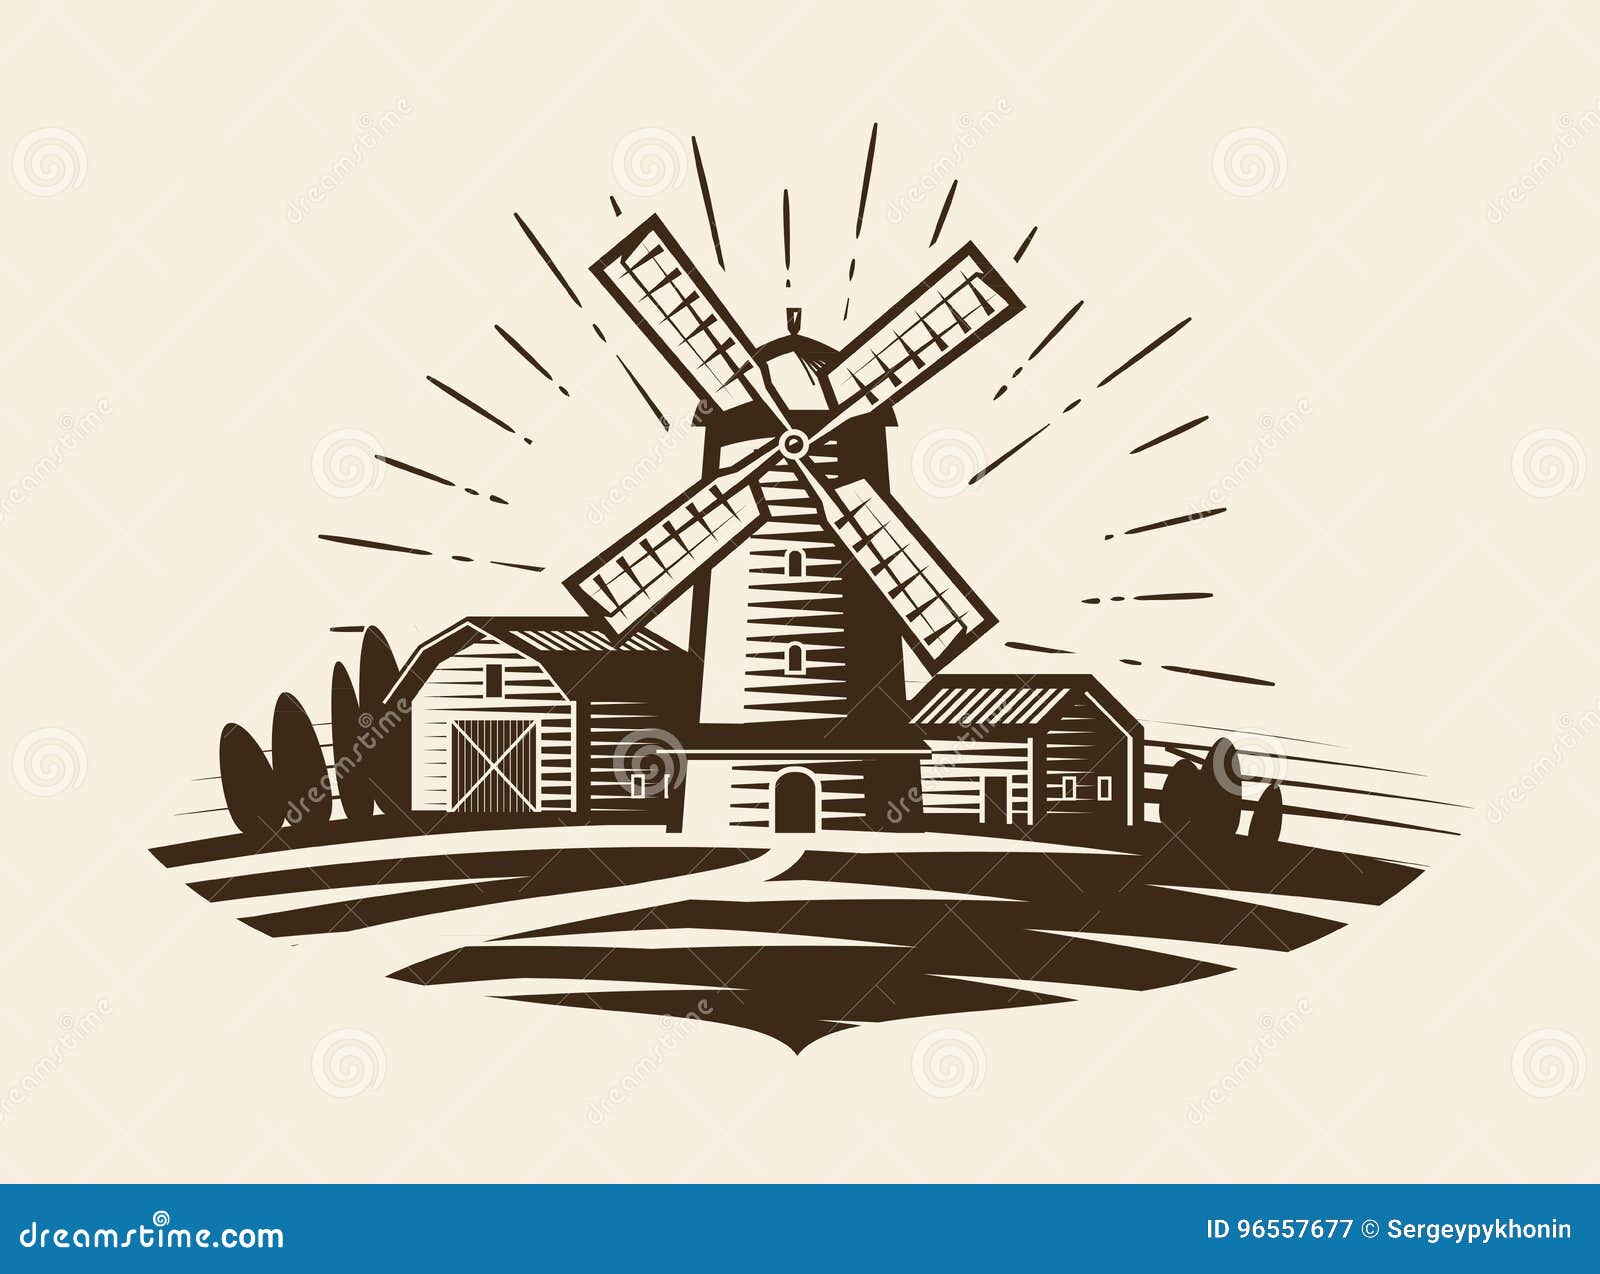 farm, rural landscape logo or label. agriculture, agribusiness, village, mill icon. vintage  